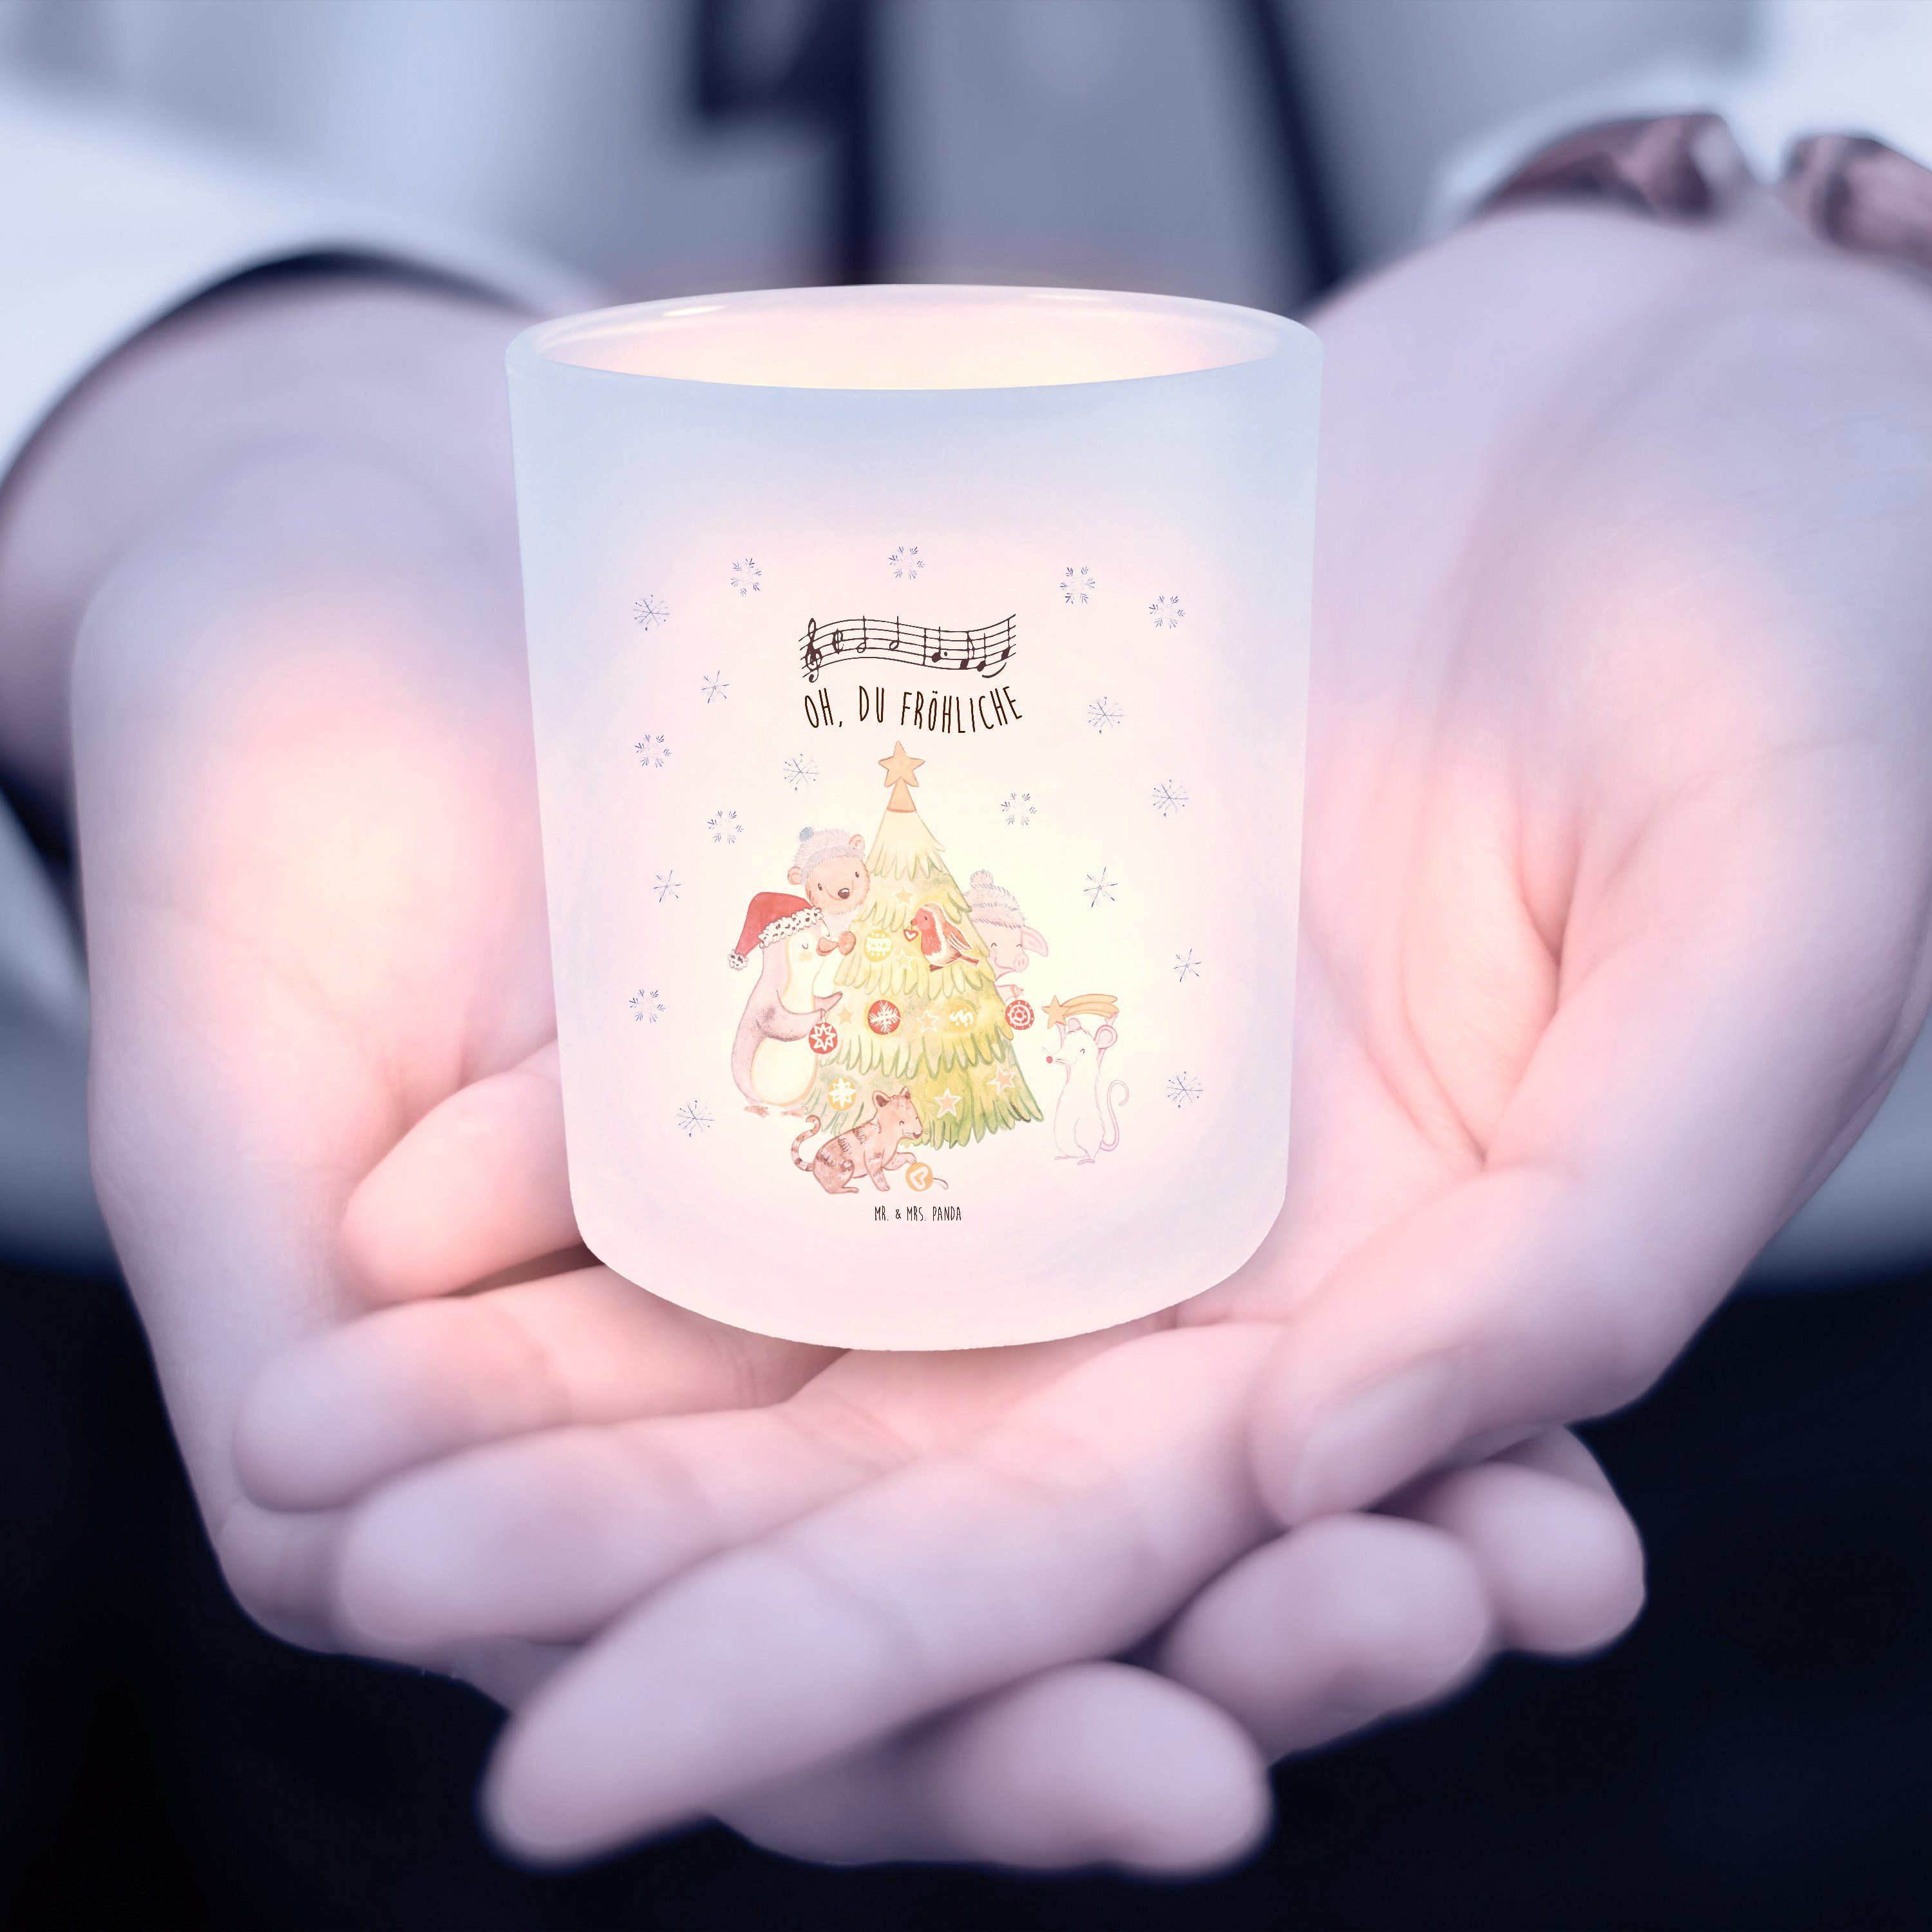 Mr. & Mrs. Panda Windlicht (1 - Geschenk, Teeli - Transparent Kerzenlicht, schmücken St) Weihnachtsbaum